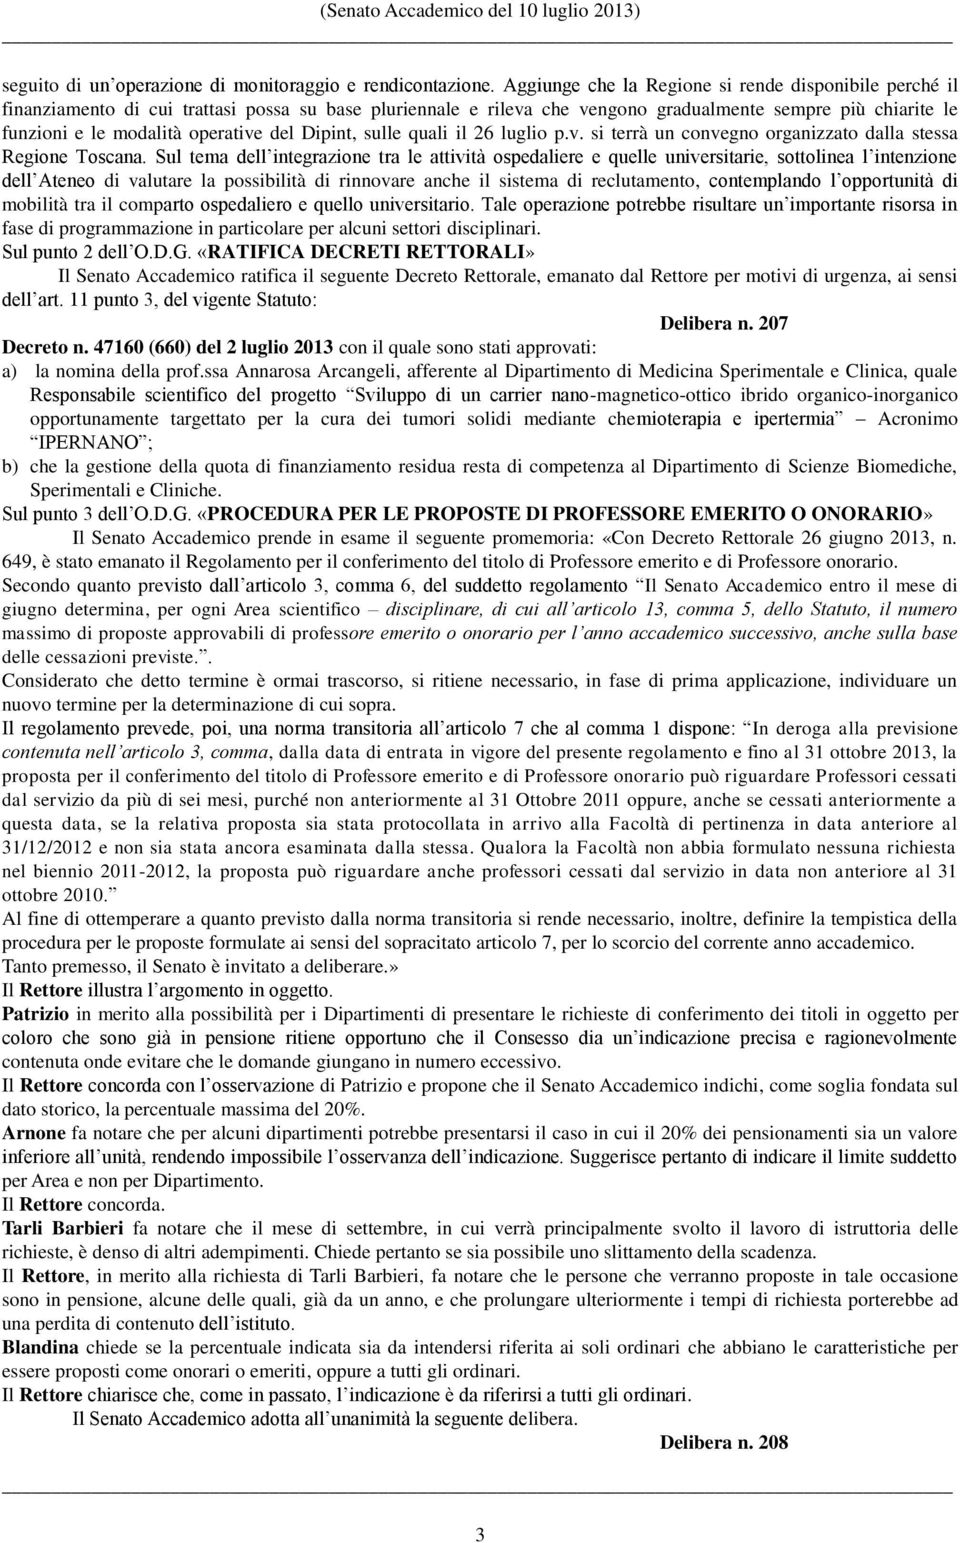 operative del Dipint, sulle quali il 26 luglio p.v. si terrà un convegno organizzato dalla stessa Regione Toscana.